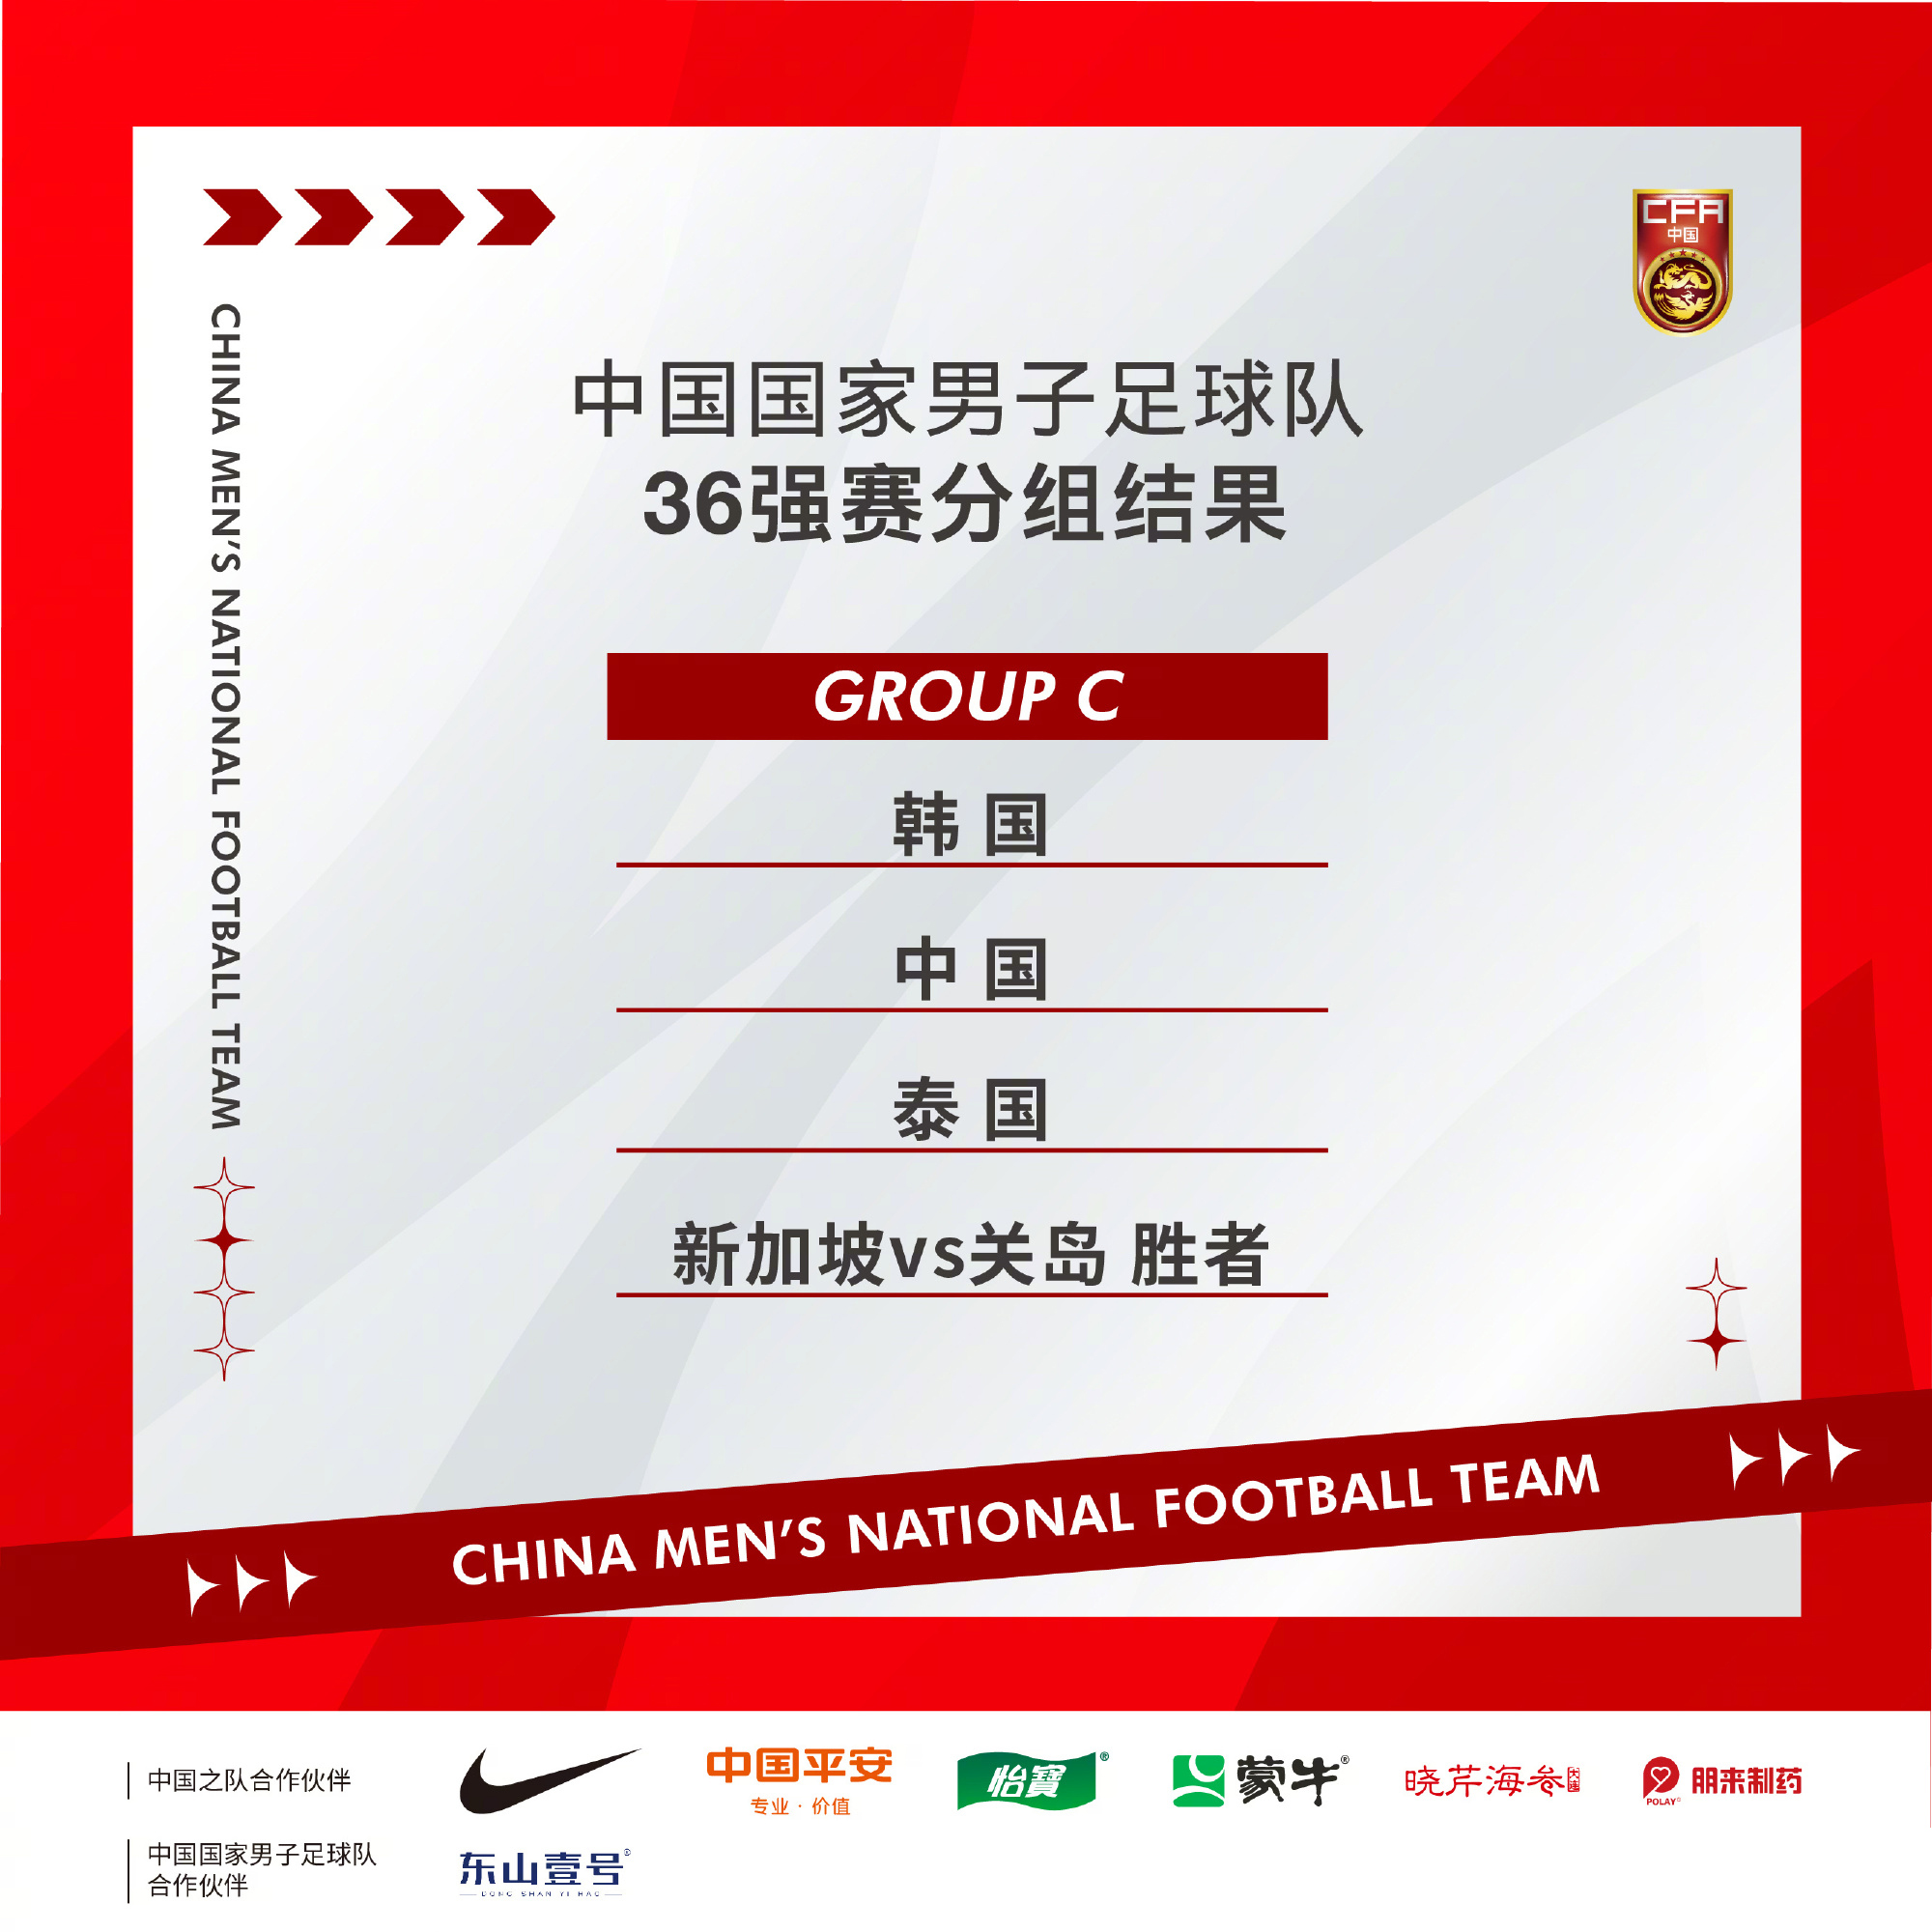 2026世界杯预选赛亚洲区36强抽签 中国队分入C组